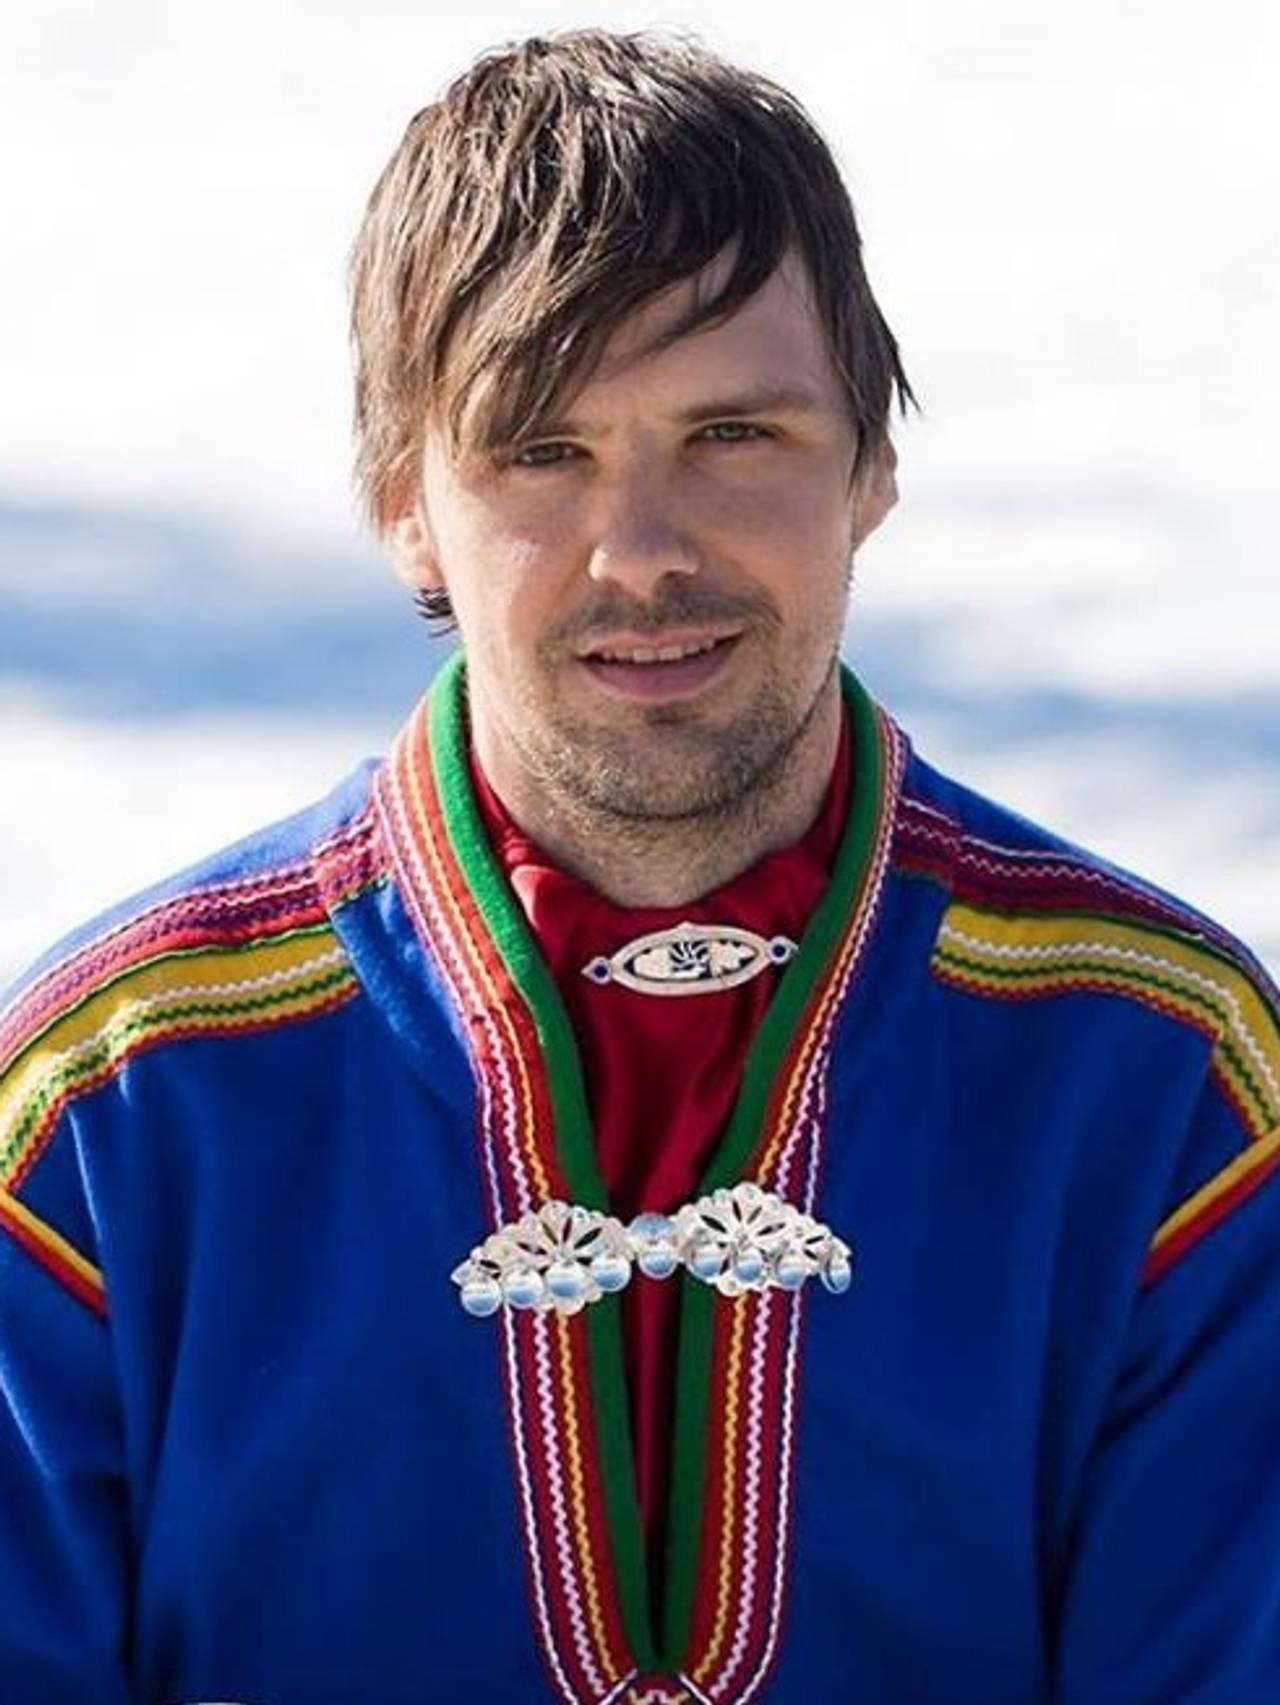 Garraduojár Fredrik Prost (41)